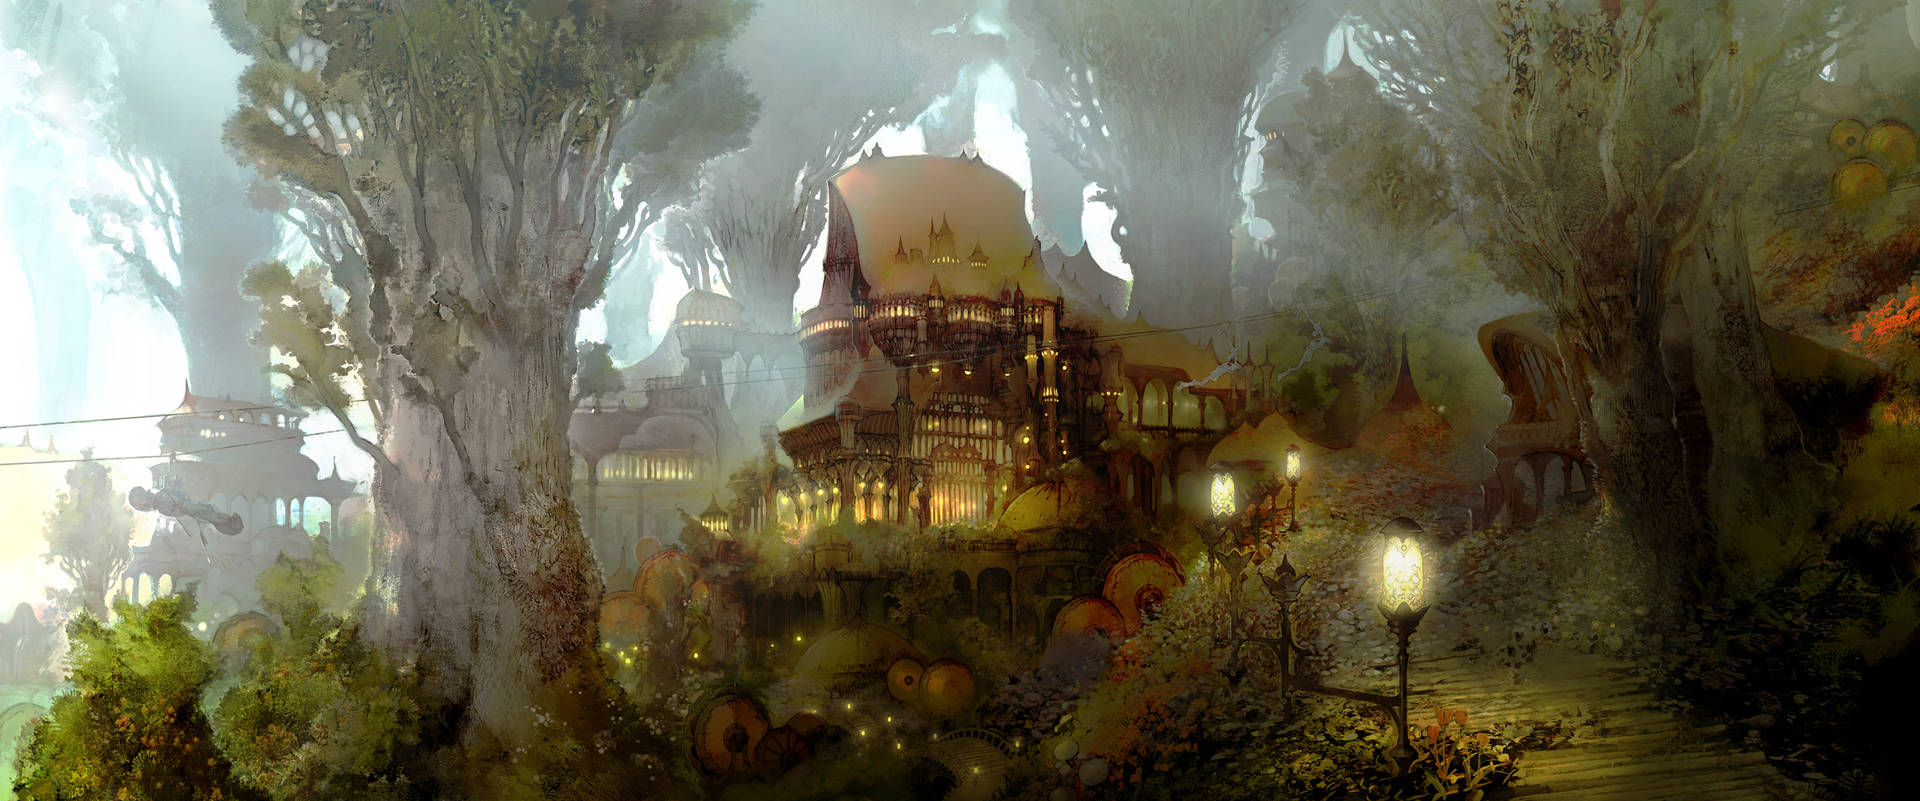 Tag på en virtuel rejse gennem Final Fantasy 14s land. Wallpaper